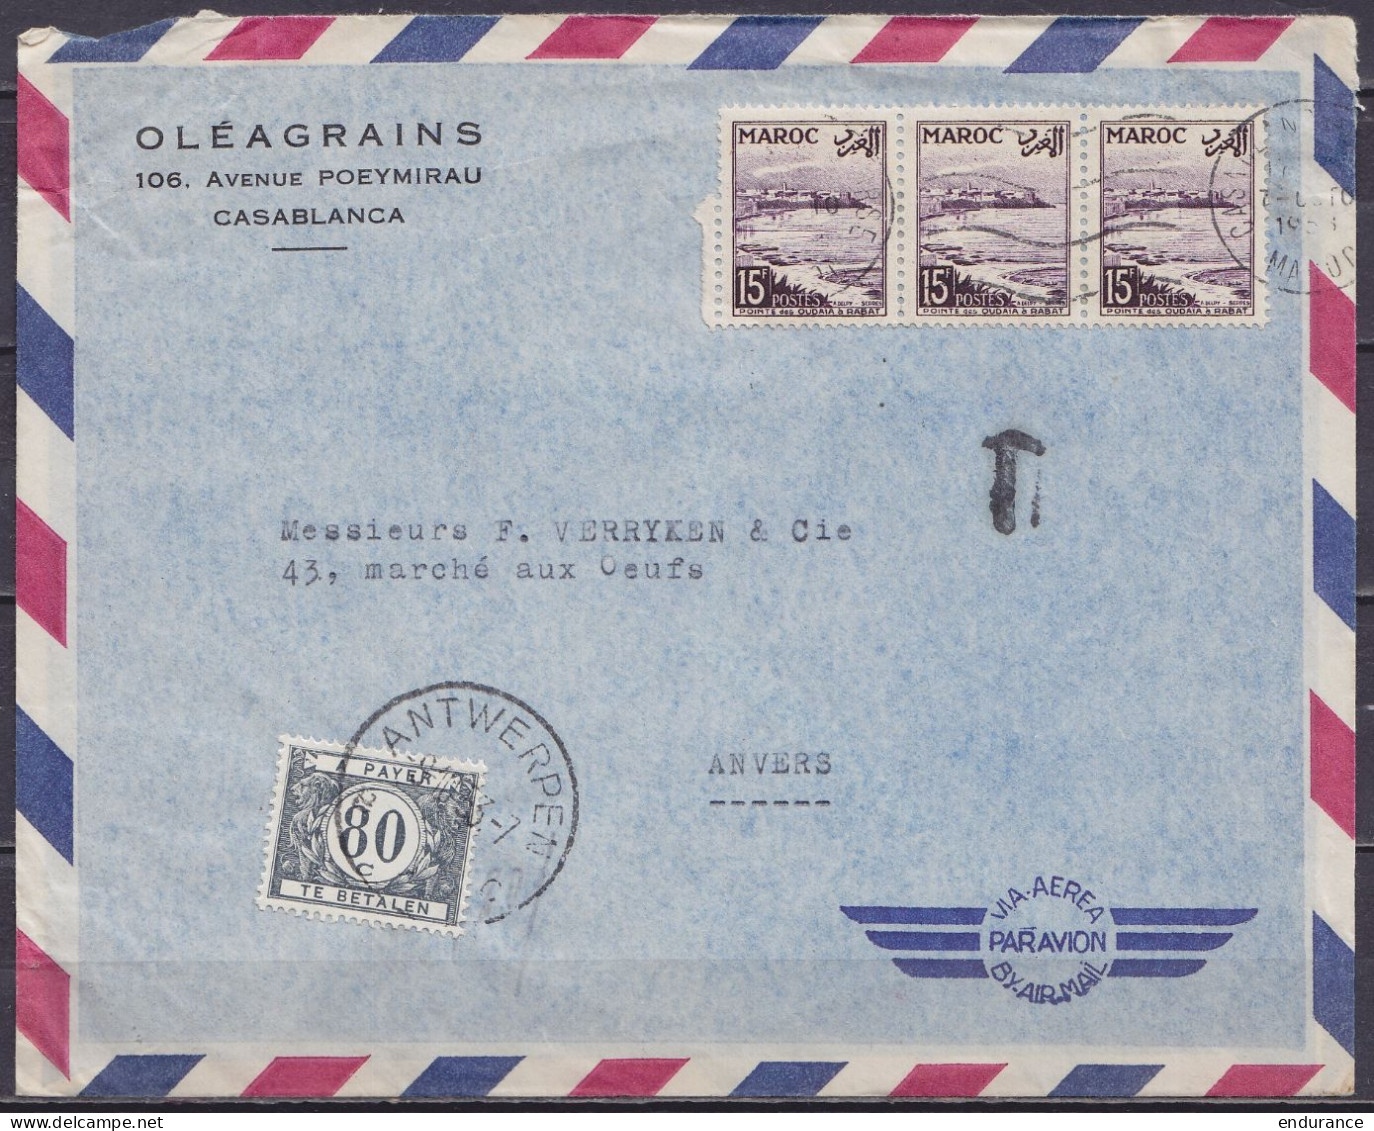 Maroc - Env. "Oléagrains" Par Avion Affr. 3x15f Flam. CASABLANCA /7 OCTO 1933 Pour ANVERS Taxée 80c Càd ANTWERPEN /9.10. - Cartas & Documentos